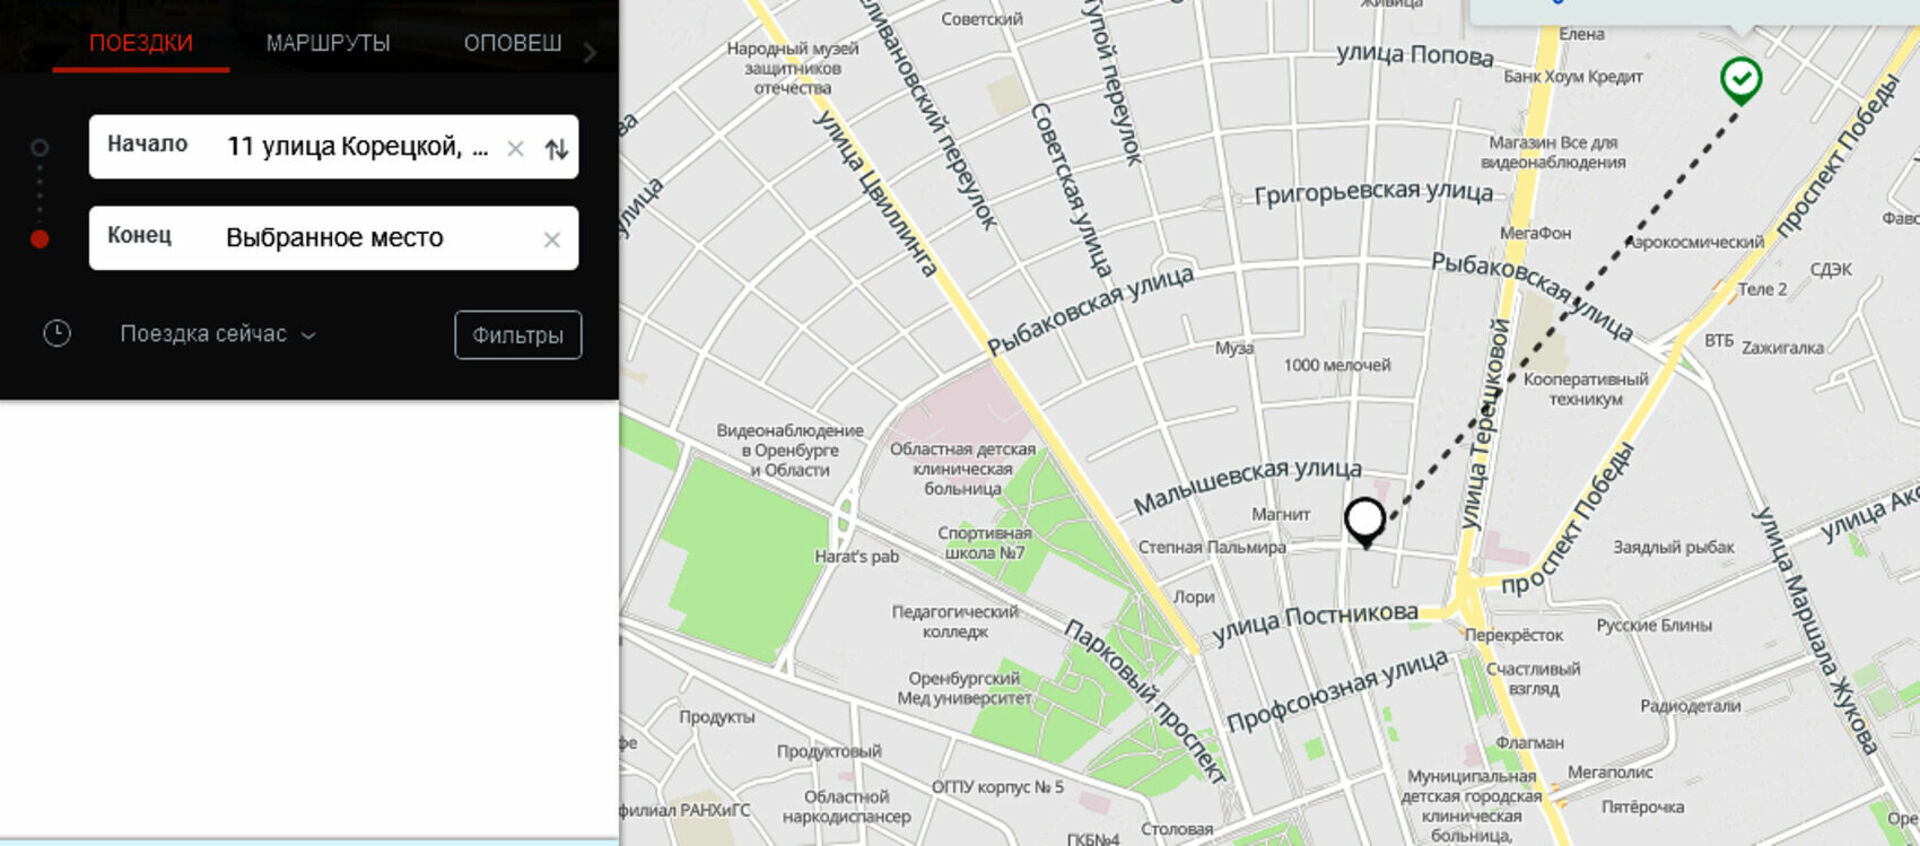 Отследить автобус южно. Приложение для отслеживания автобусов. Карта отслеживания автобусов. Мониторинг общественного транспорта в Москве. Moovit транспортное приложение.